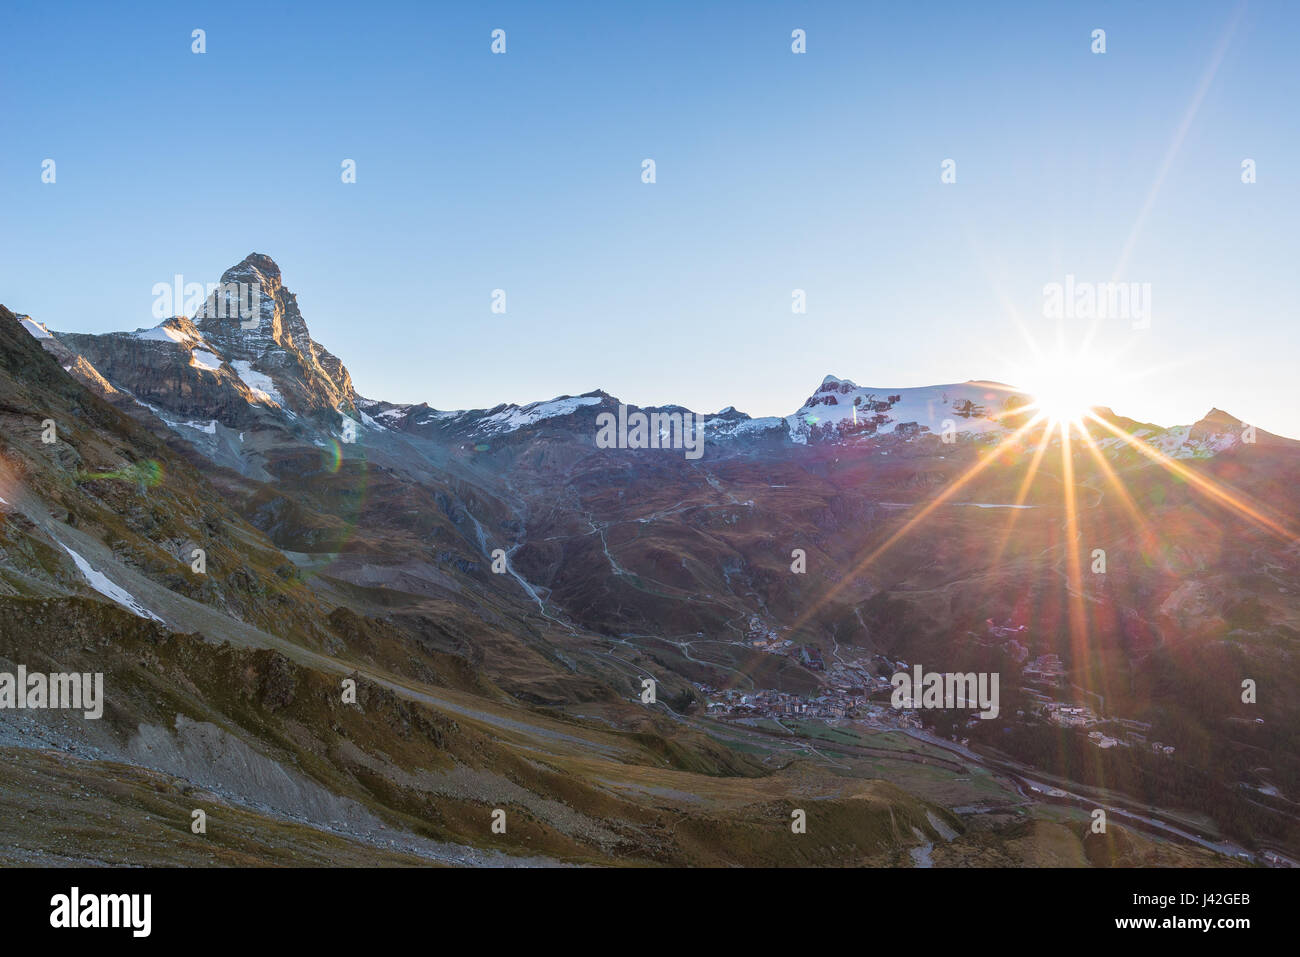 Vue aérienne au lever de Breuil Cervinia et Cervin ou Matterhorn peak, célèbre station de ski en Vallée d'aoste, Italie. Banque D'Images